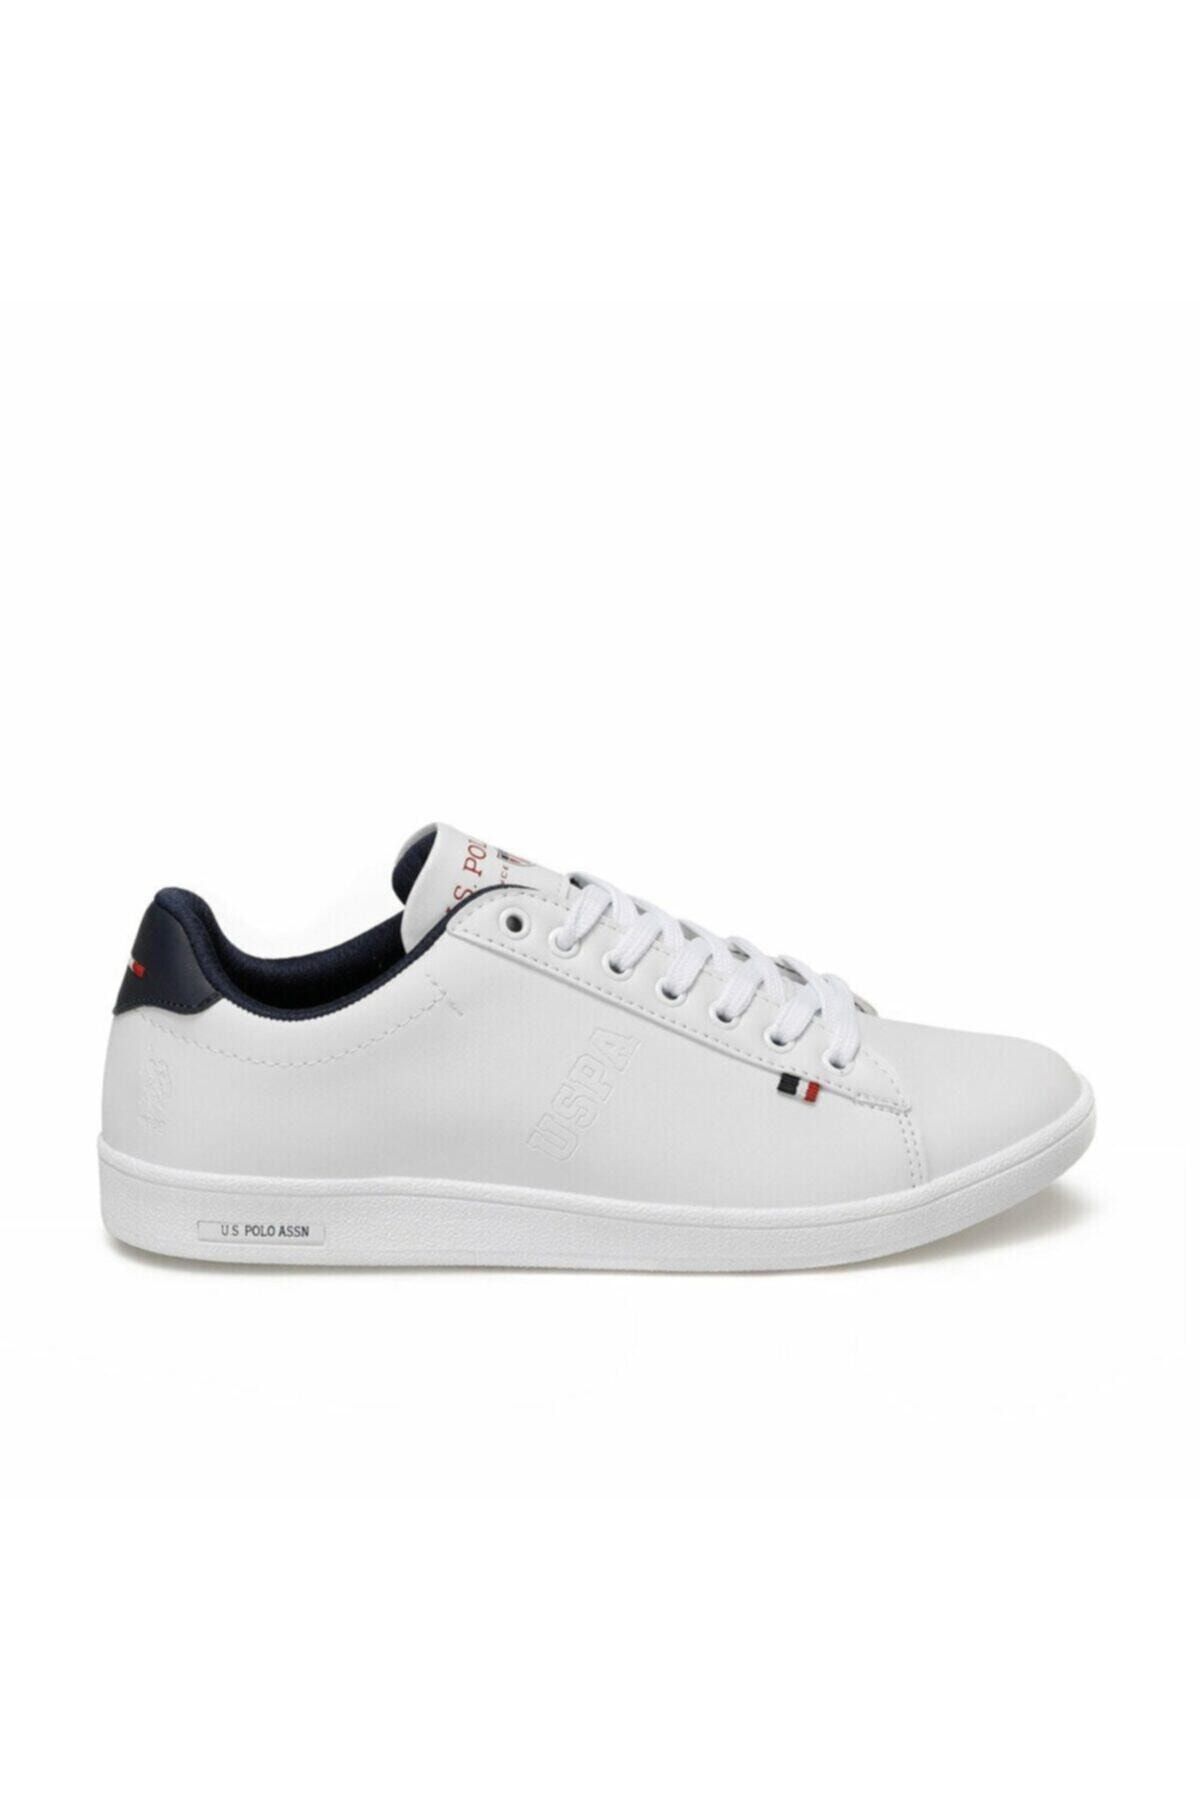 U.S. Polo Assn. FRANCO Beyaz Erkek Sneaker Ayakkabı 100249743